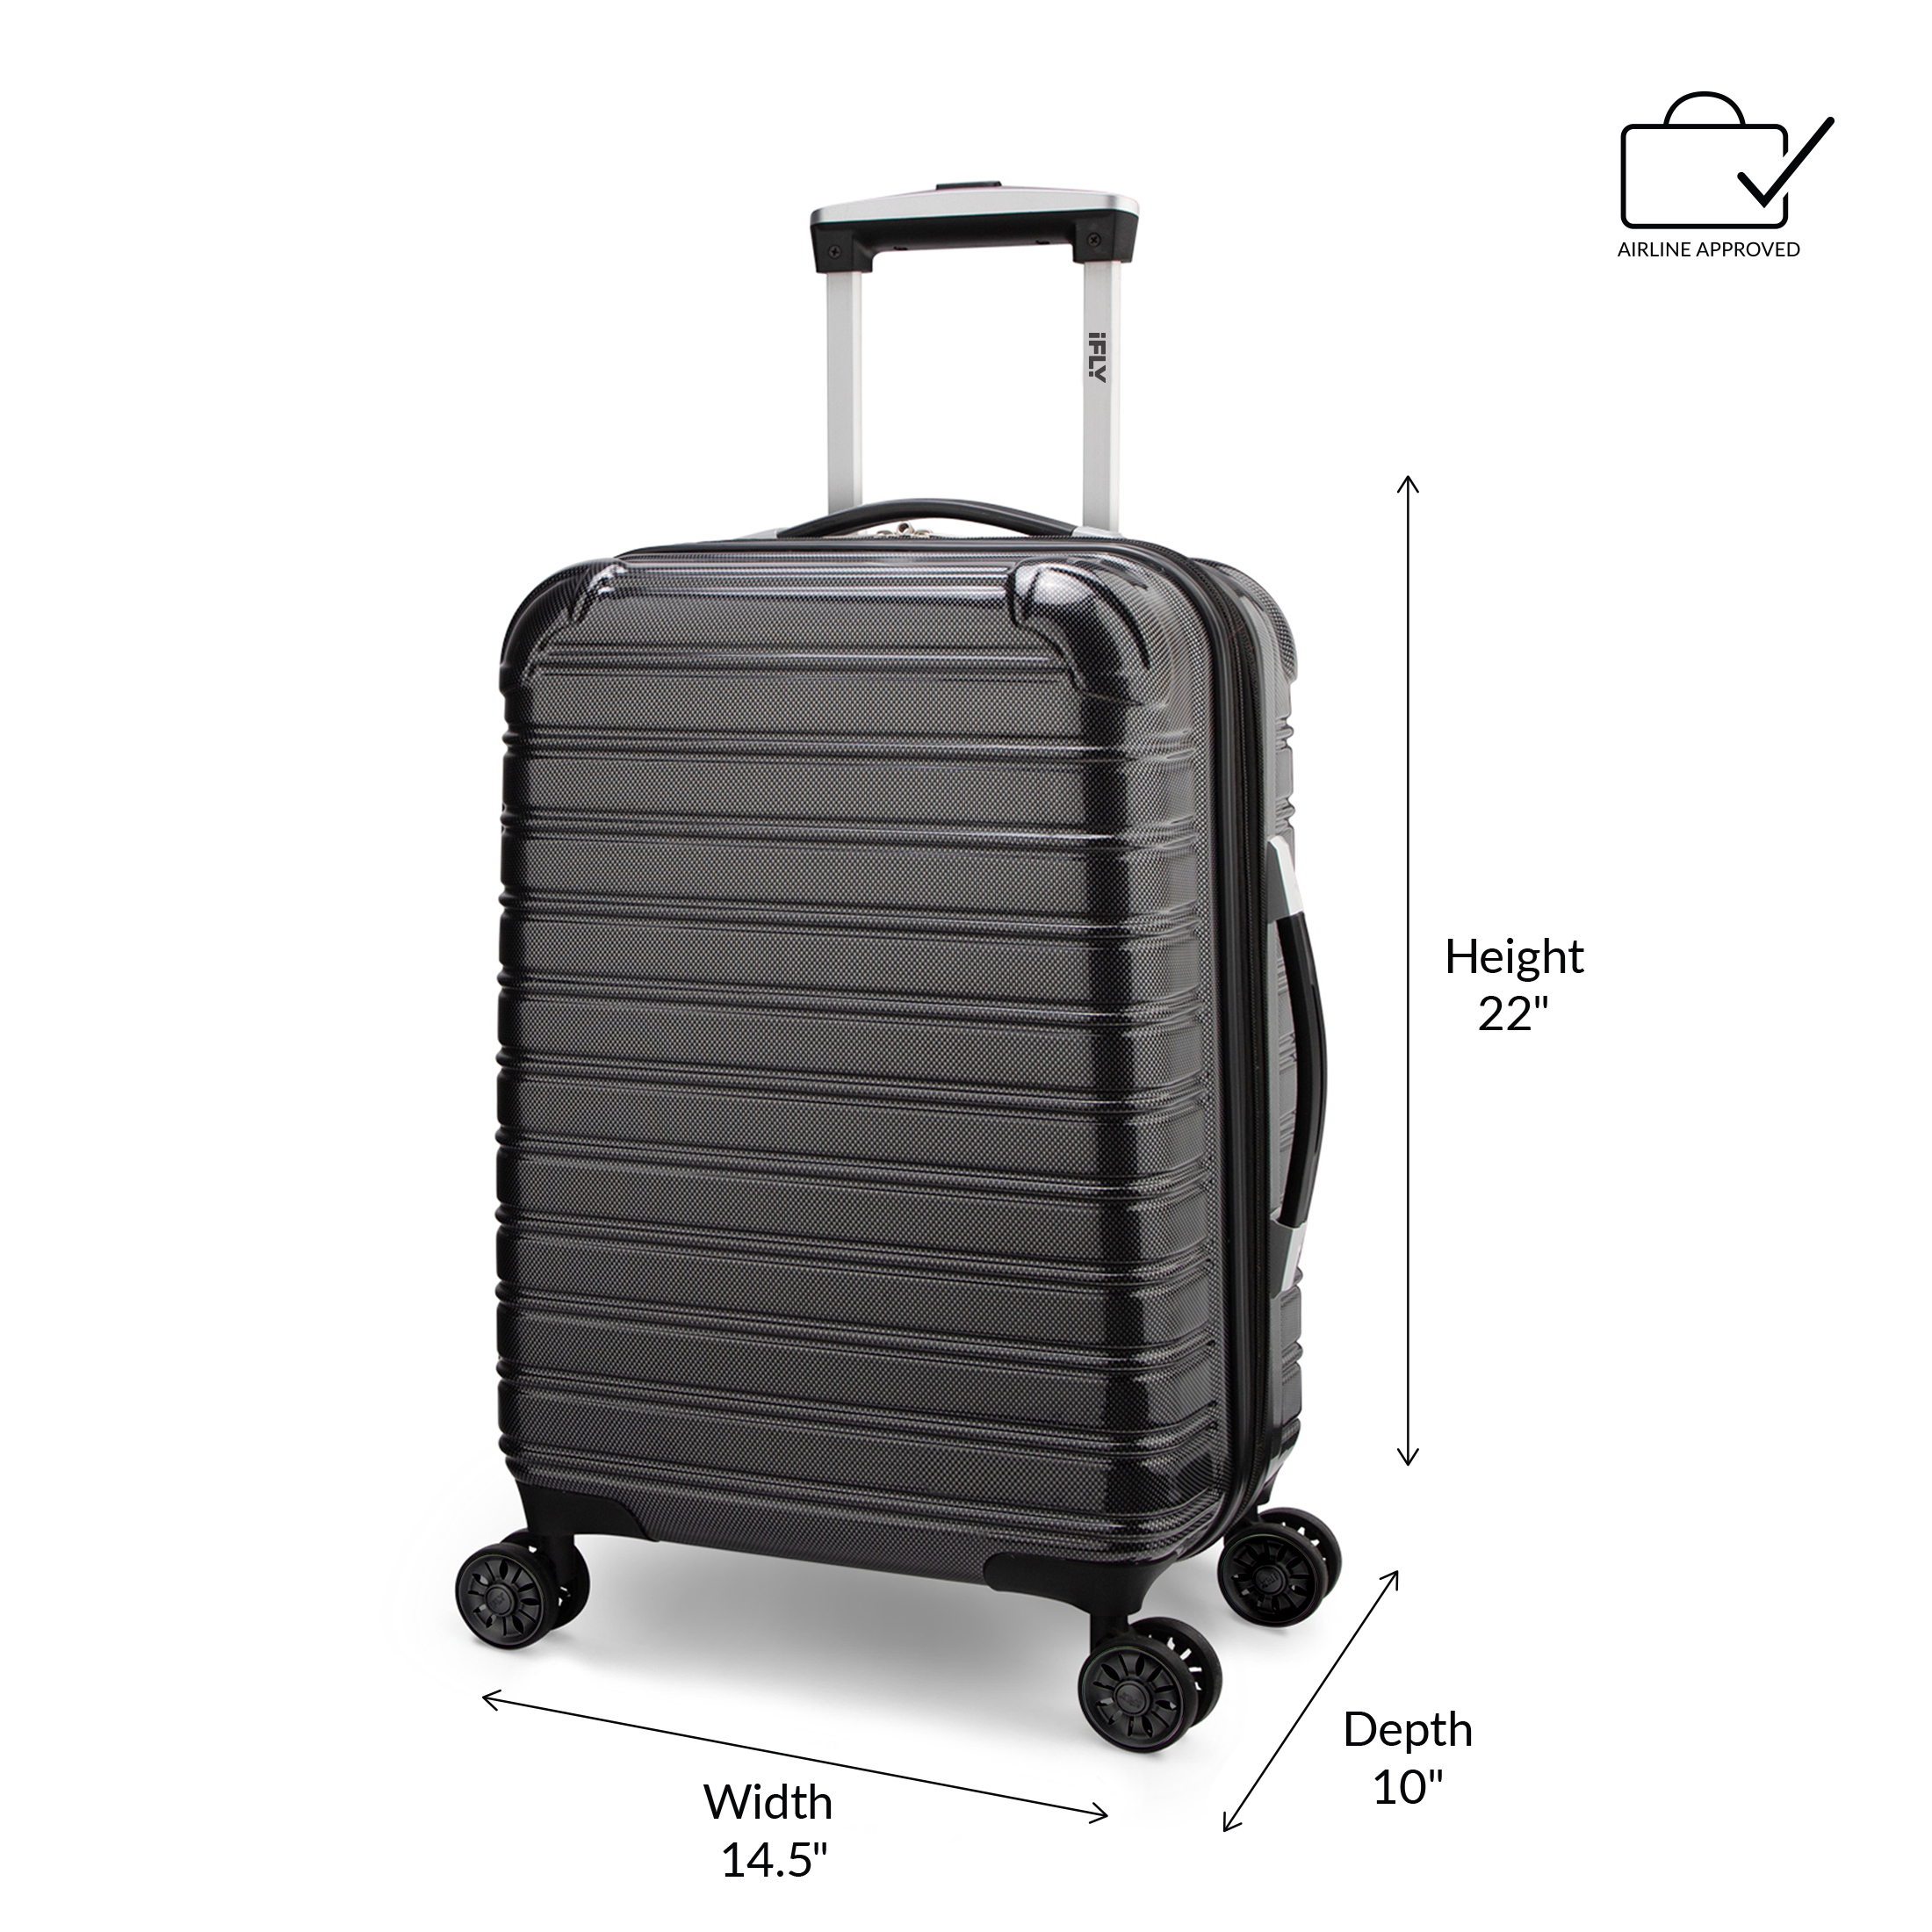 iFLY Hardside Fibertech Luggage 20" Carry-on Luggage, Black - image 2 of 10